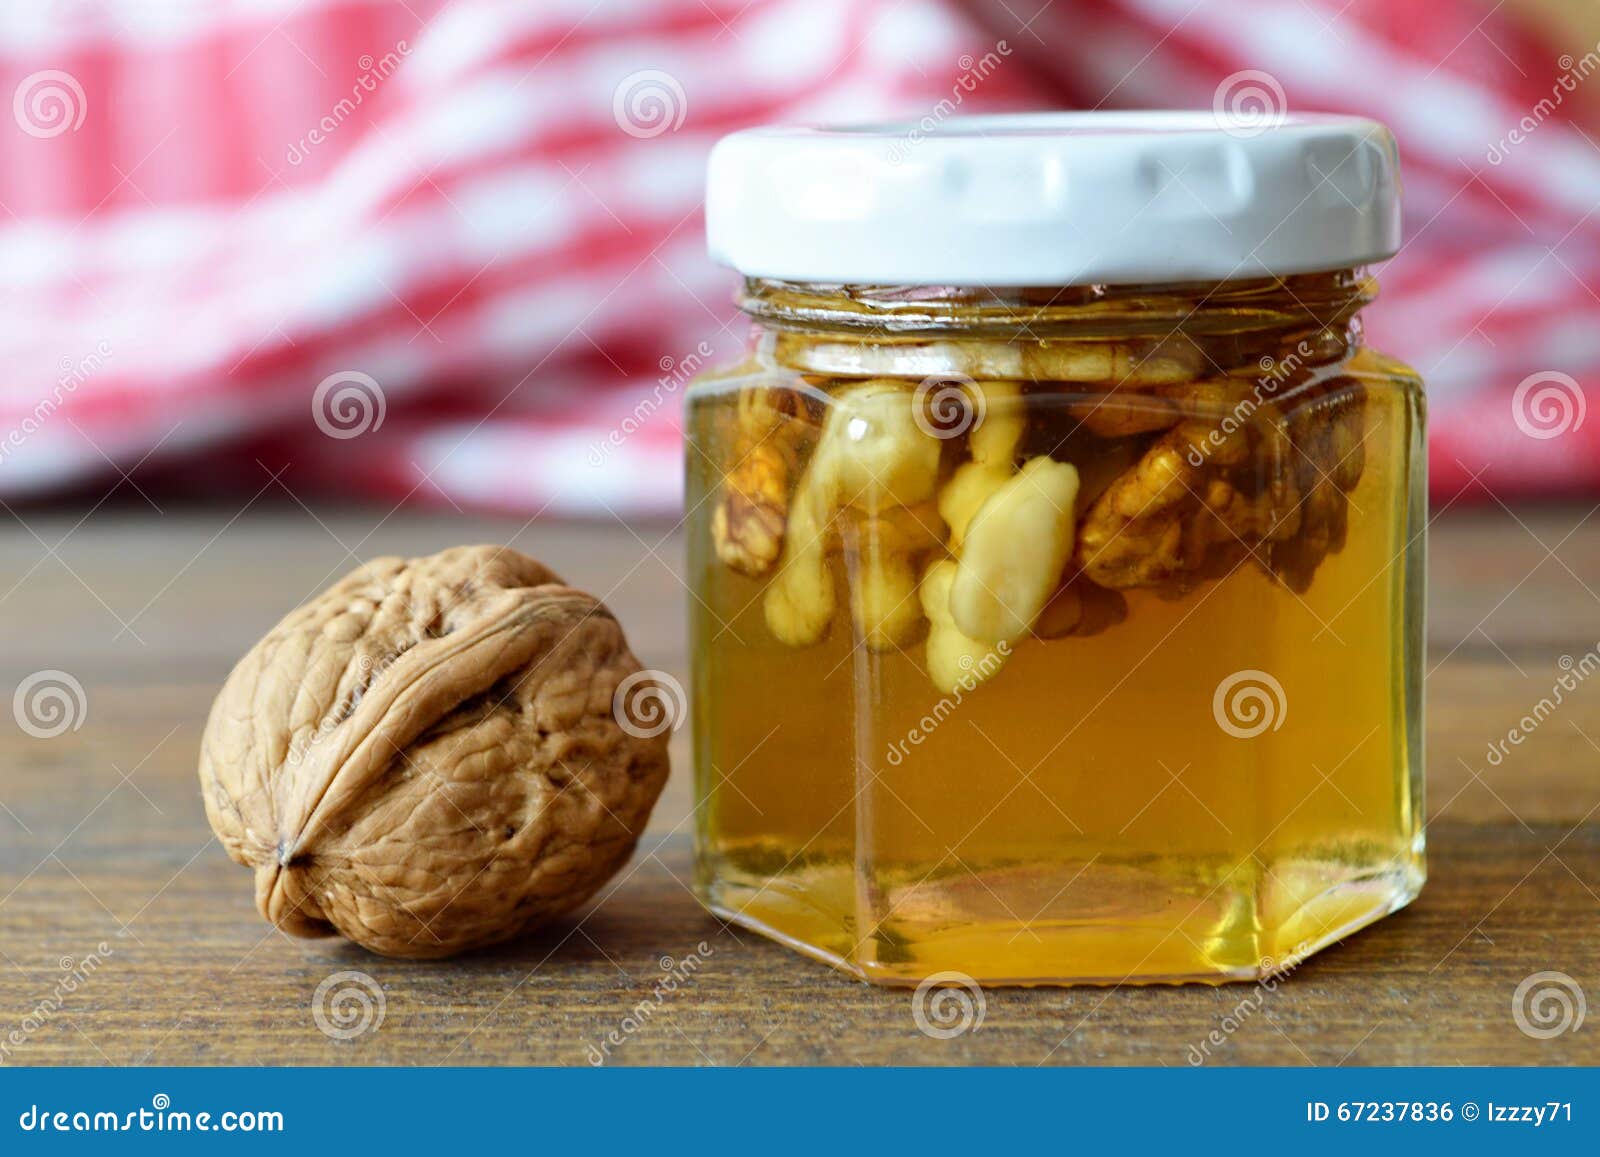 Медовый орех. Алоэ мед лимон орехи. Грецкий орех с мёдом. Алоэ с медом и орехами. Мед орехи лимон польза